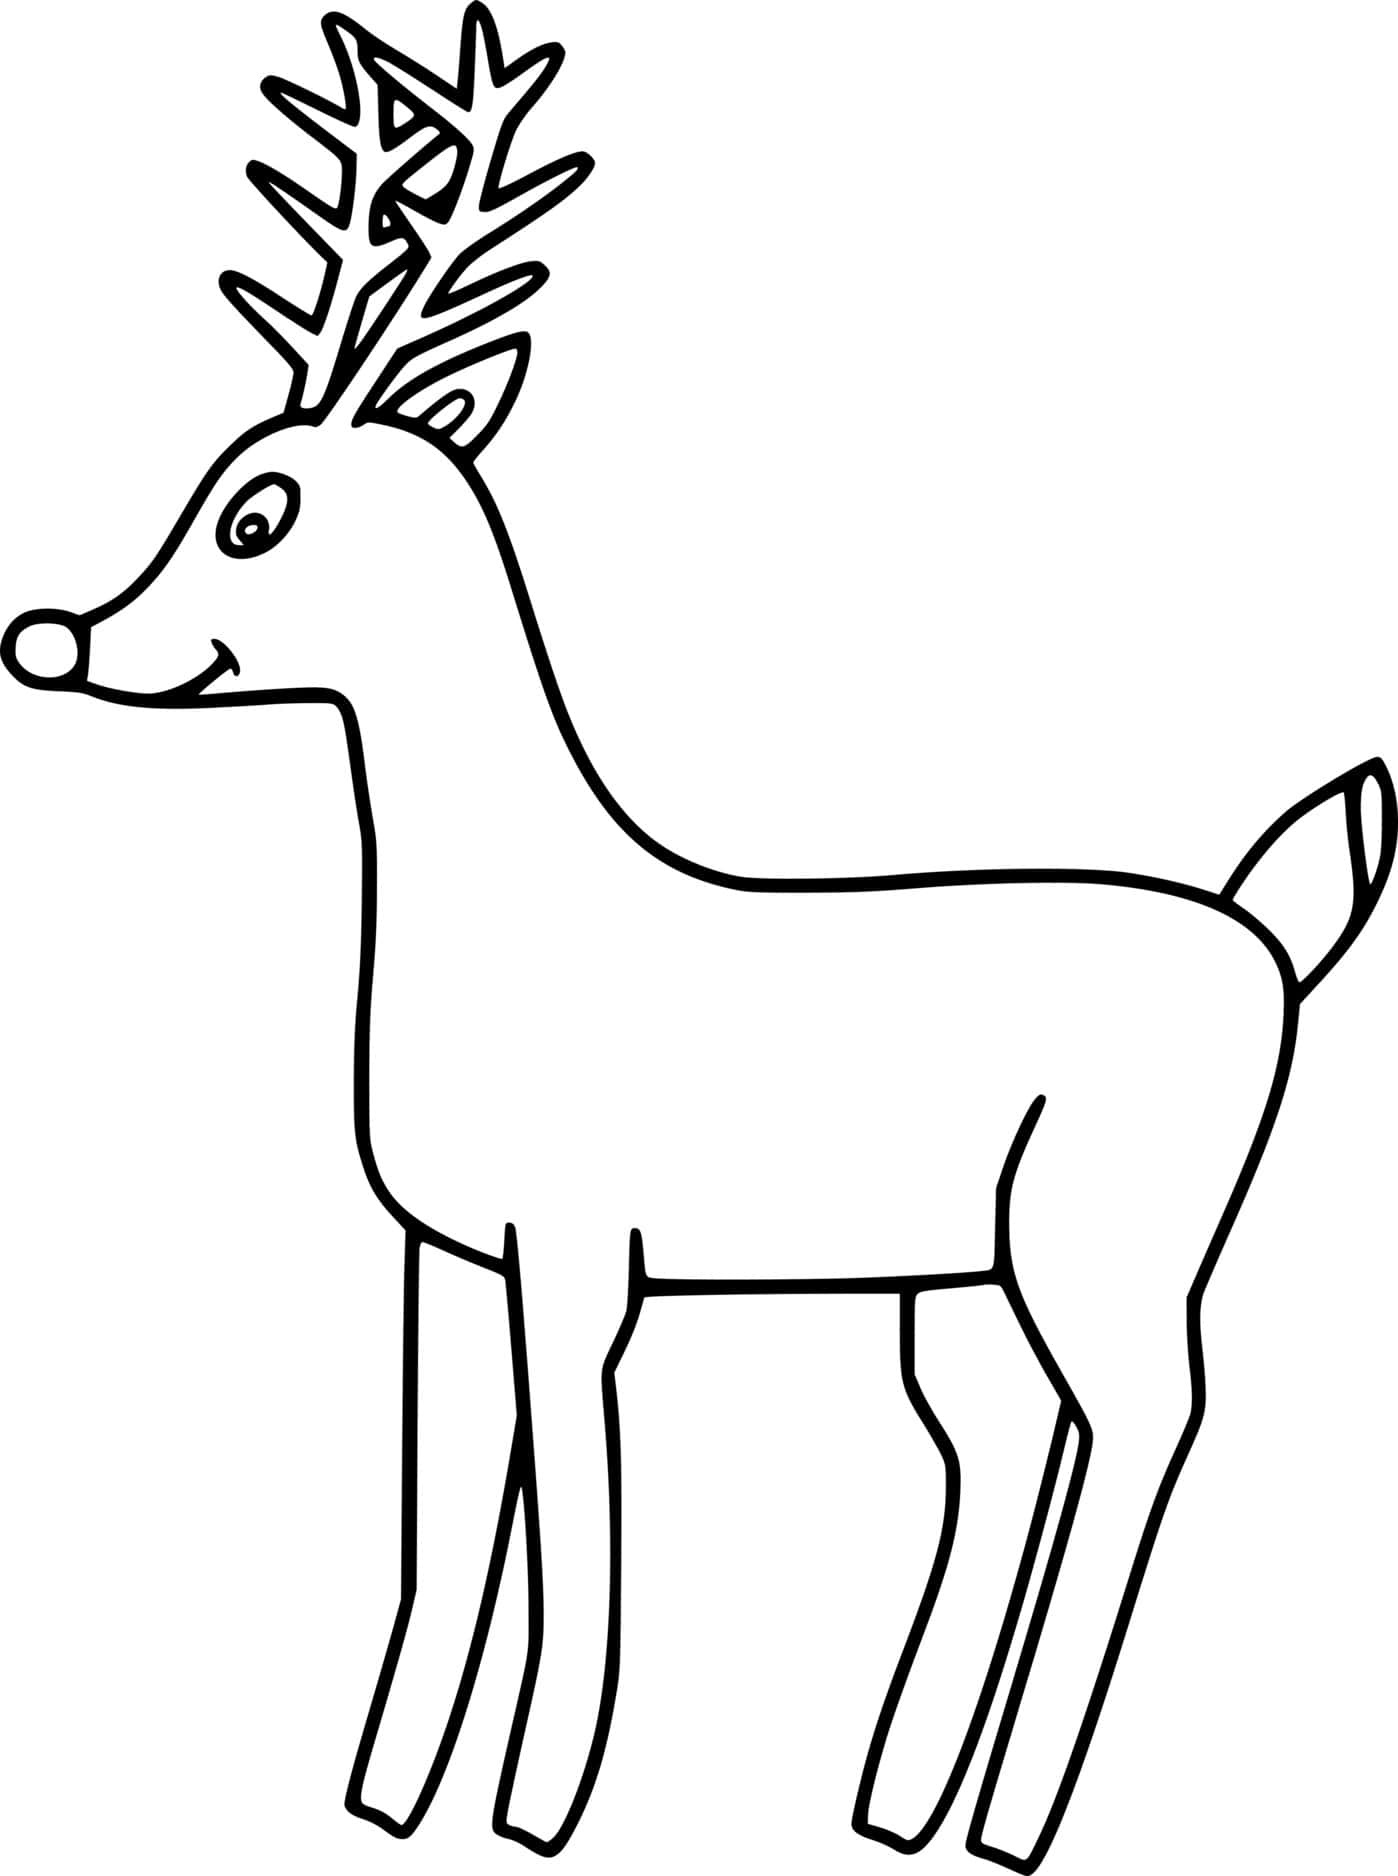 Simple Cute Deer Coloring Page